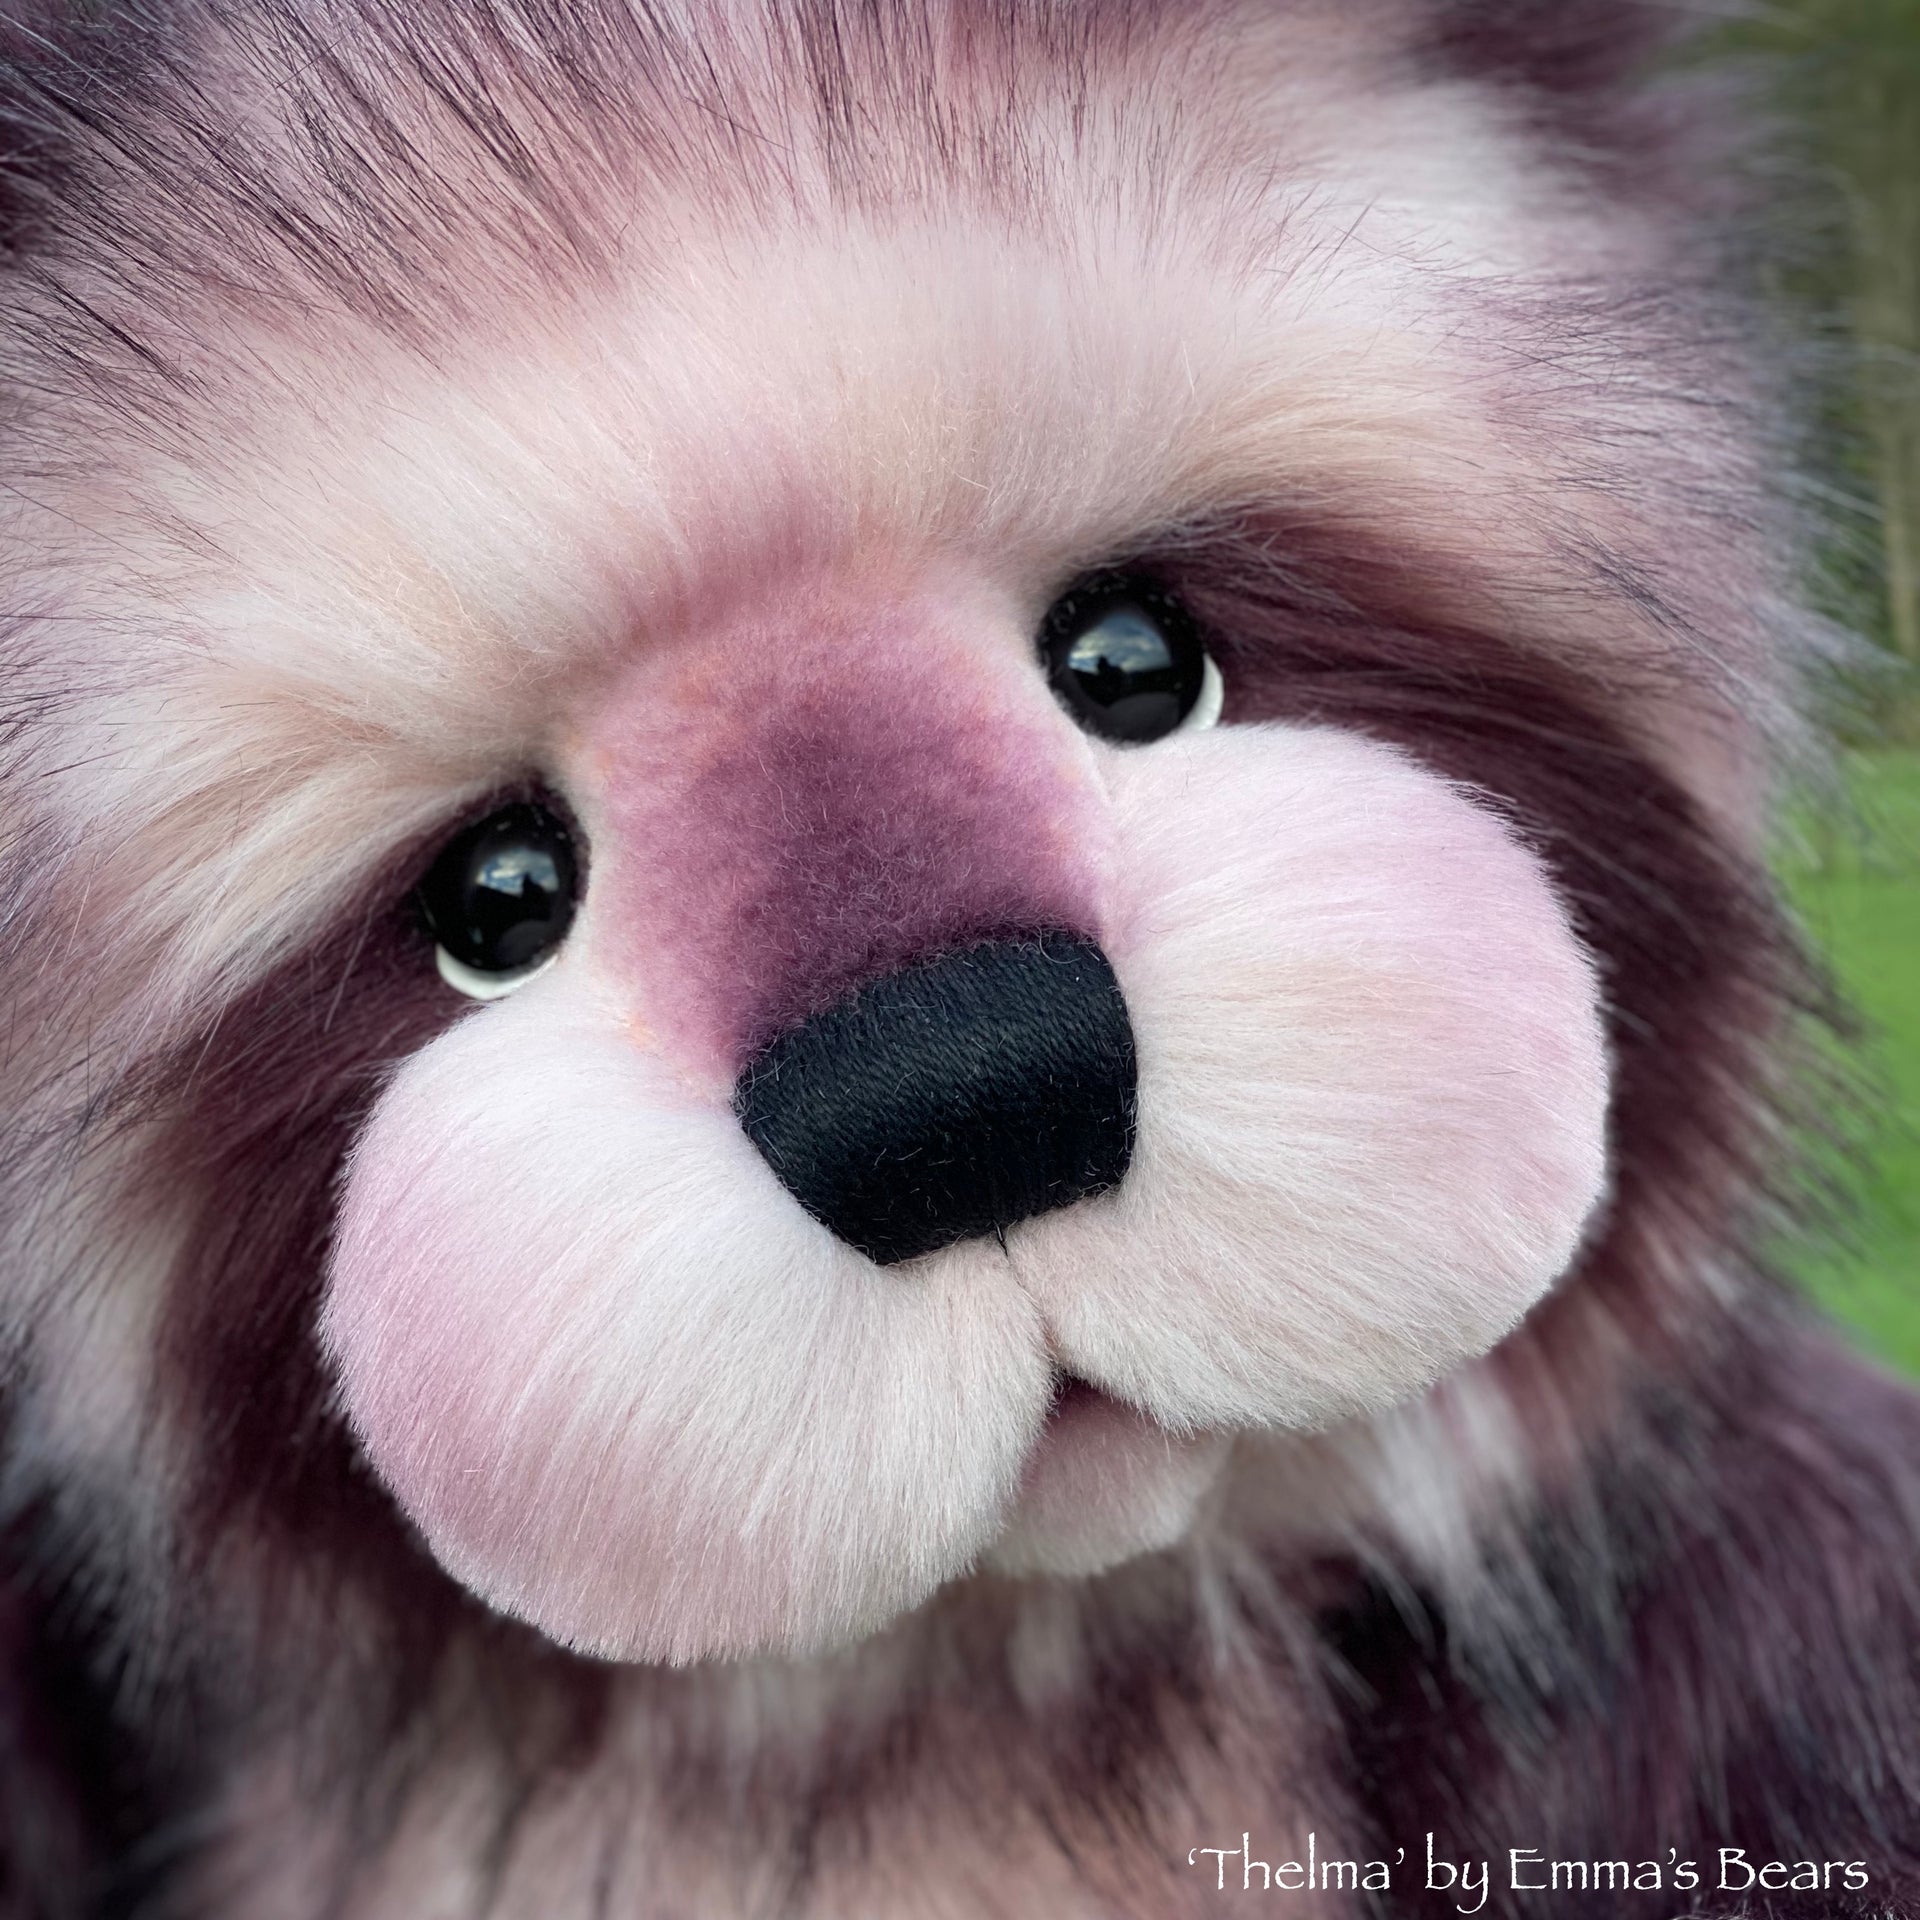 Thelma - 22" faux fur Artist Bear by Emma's Bears - OOAK